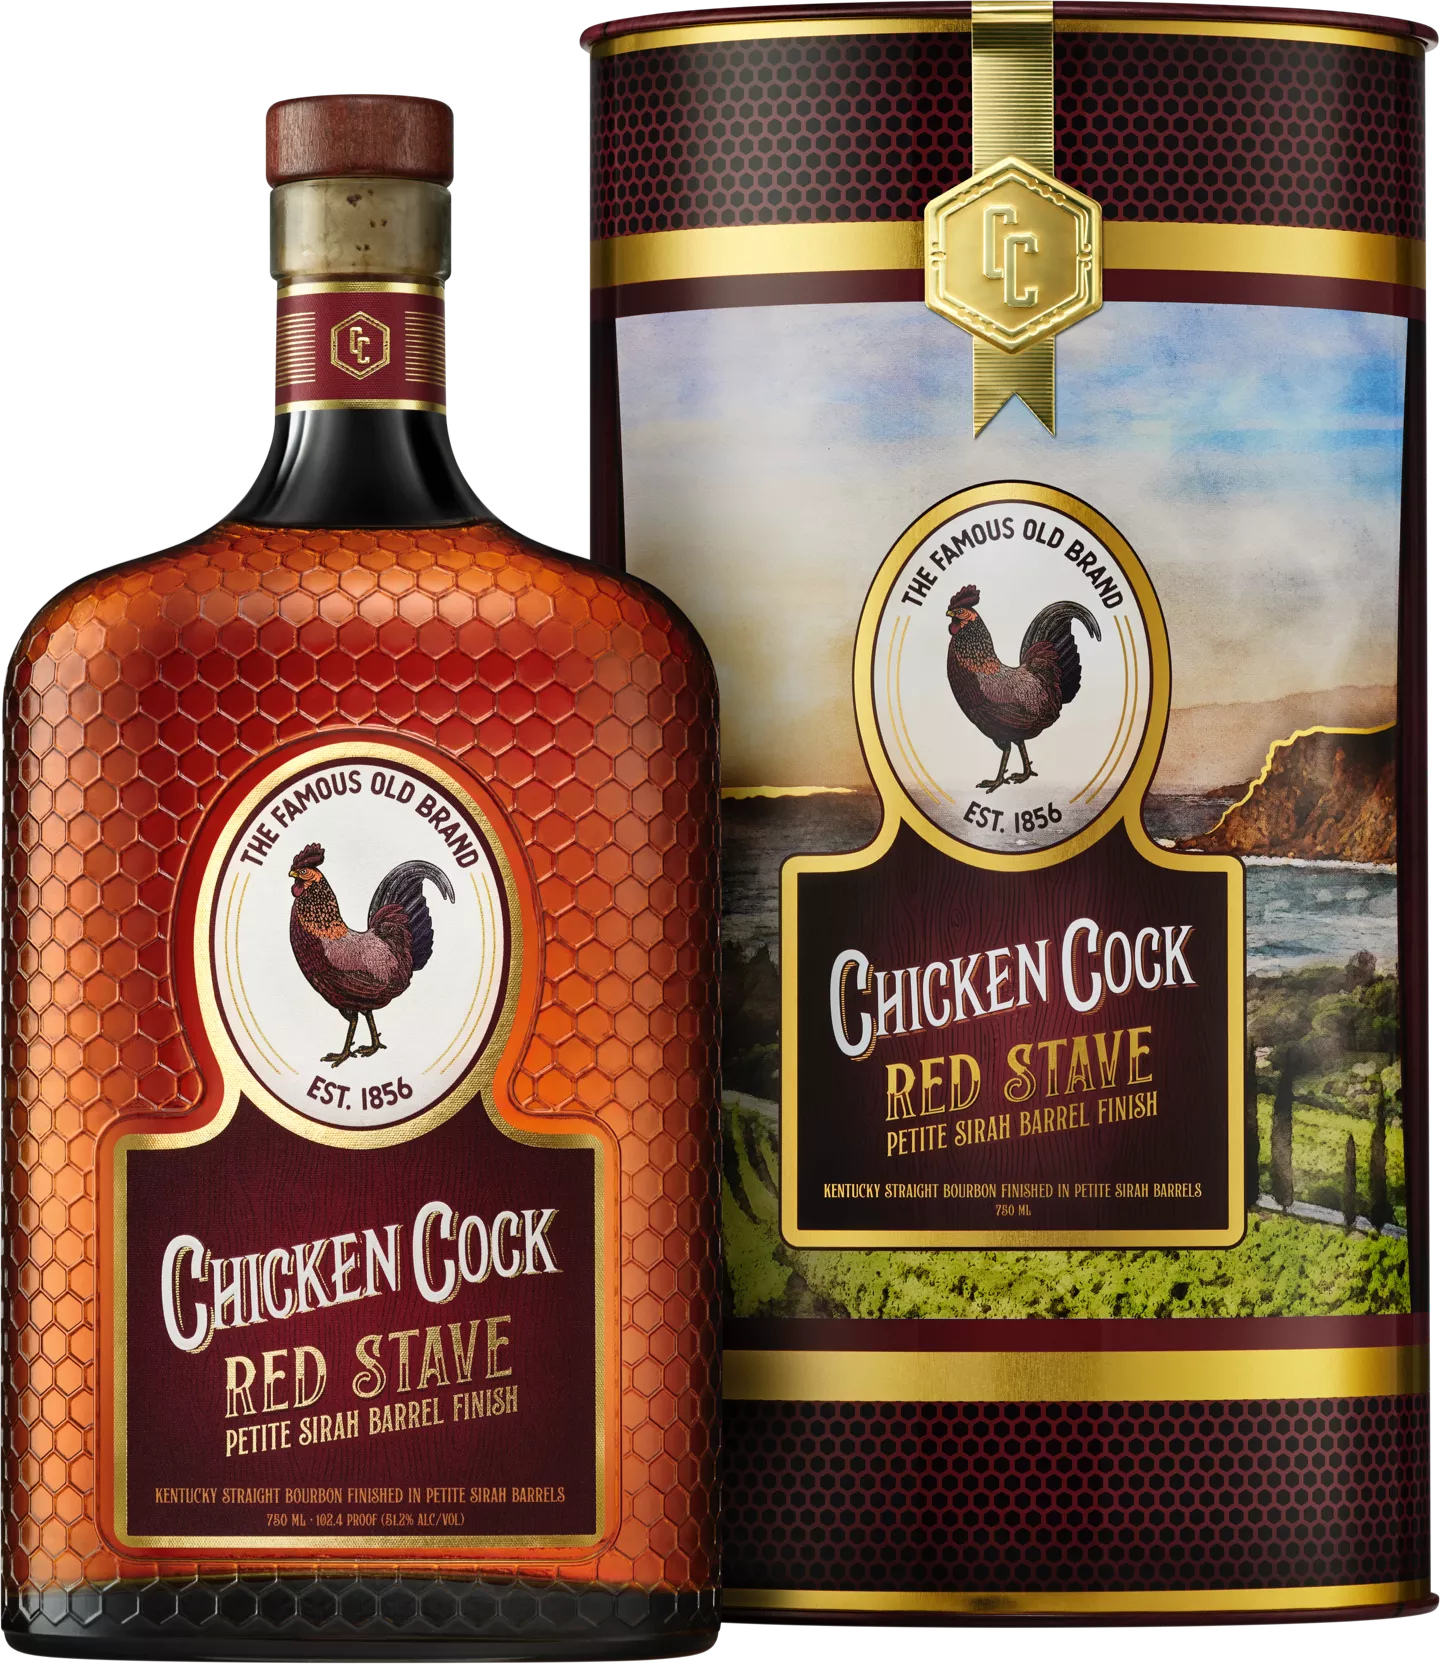 ChickenCock_RedStave_OnBlack_V2